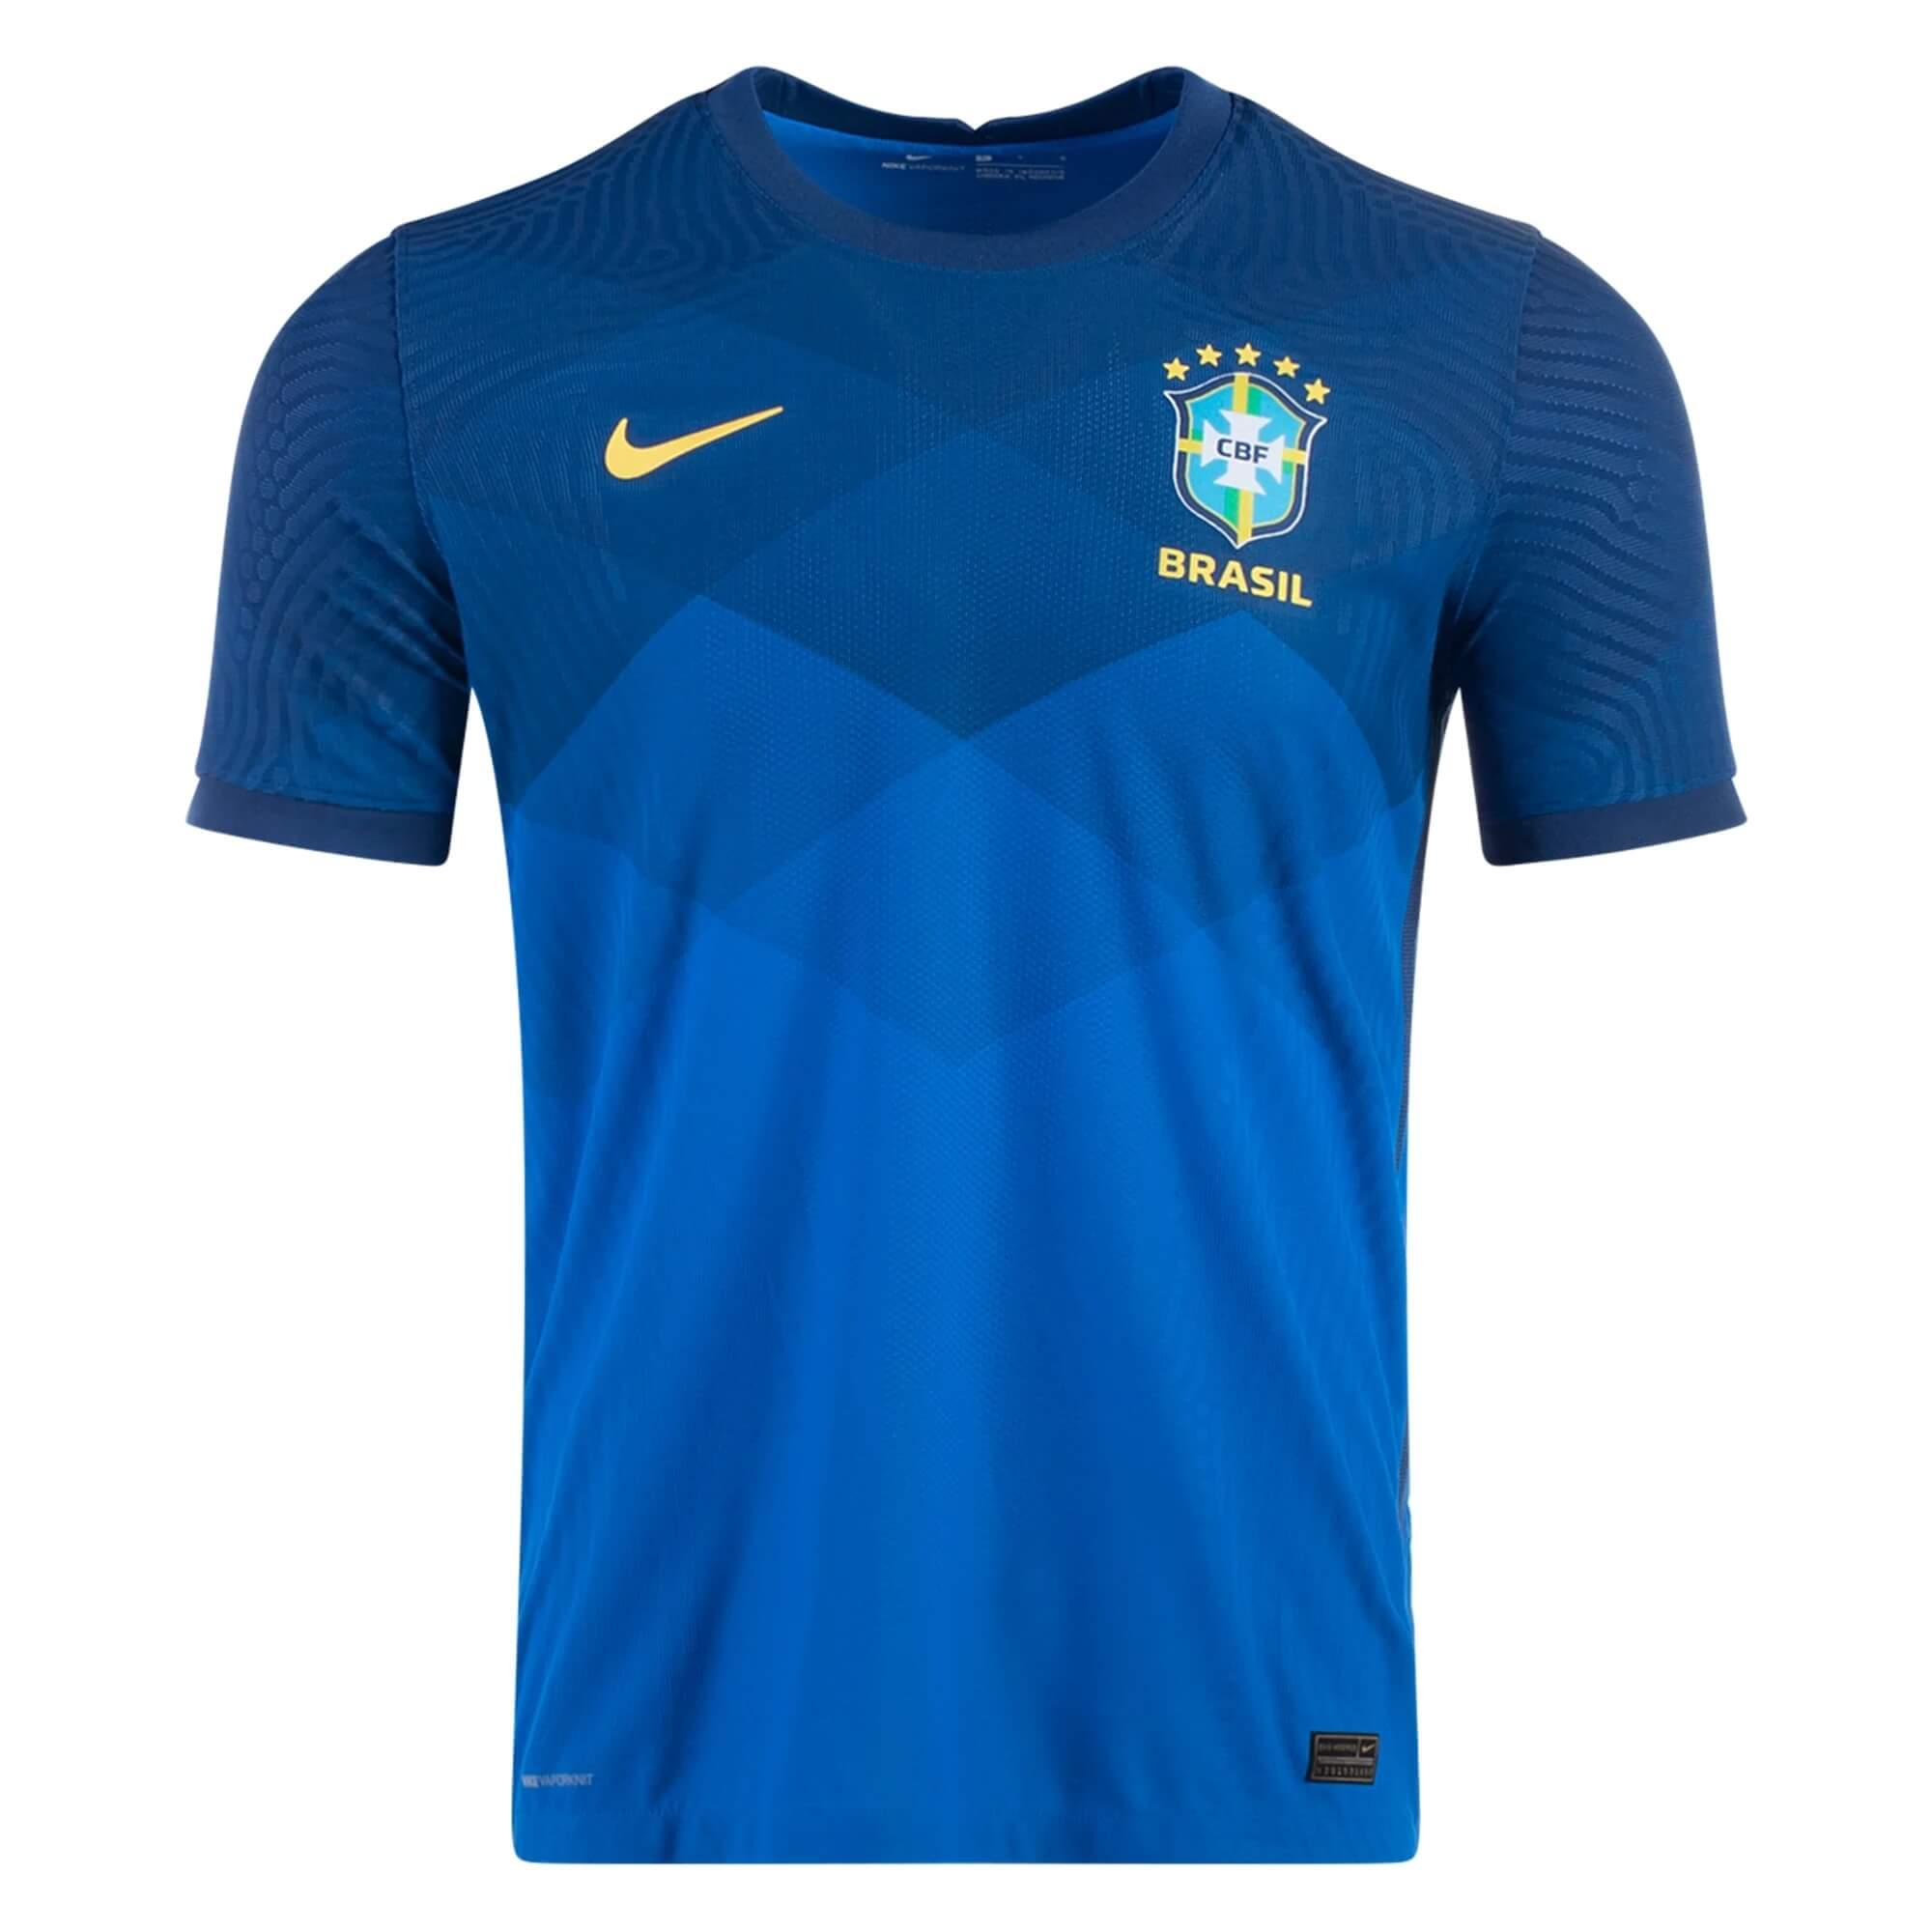 Brasil Brazil home soccer jersey 2018 size L